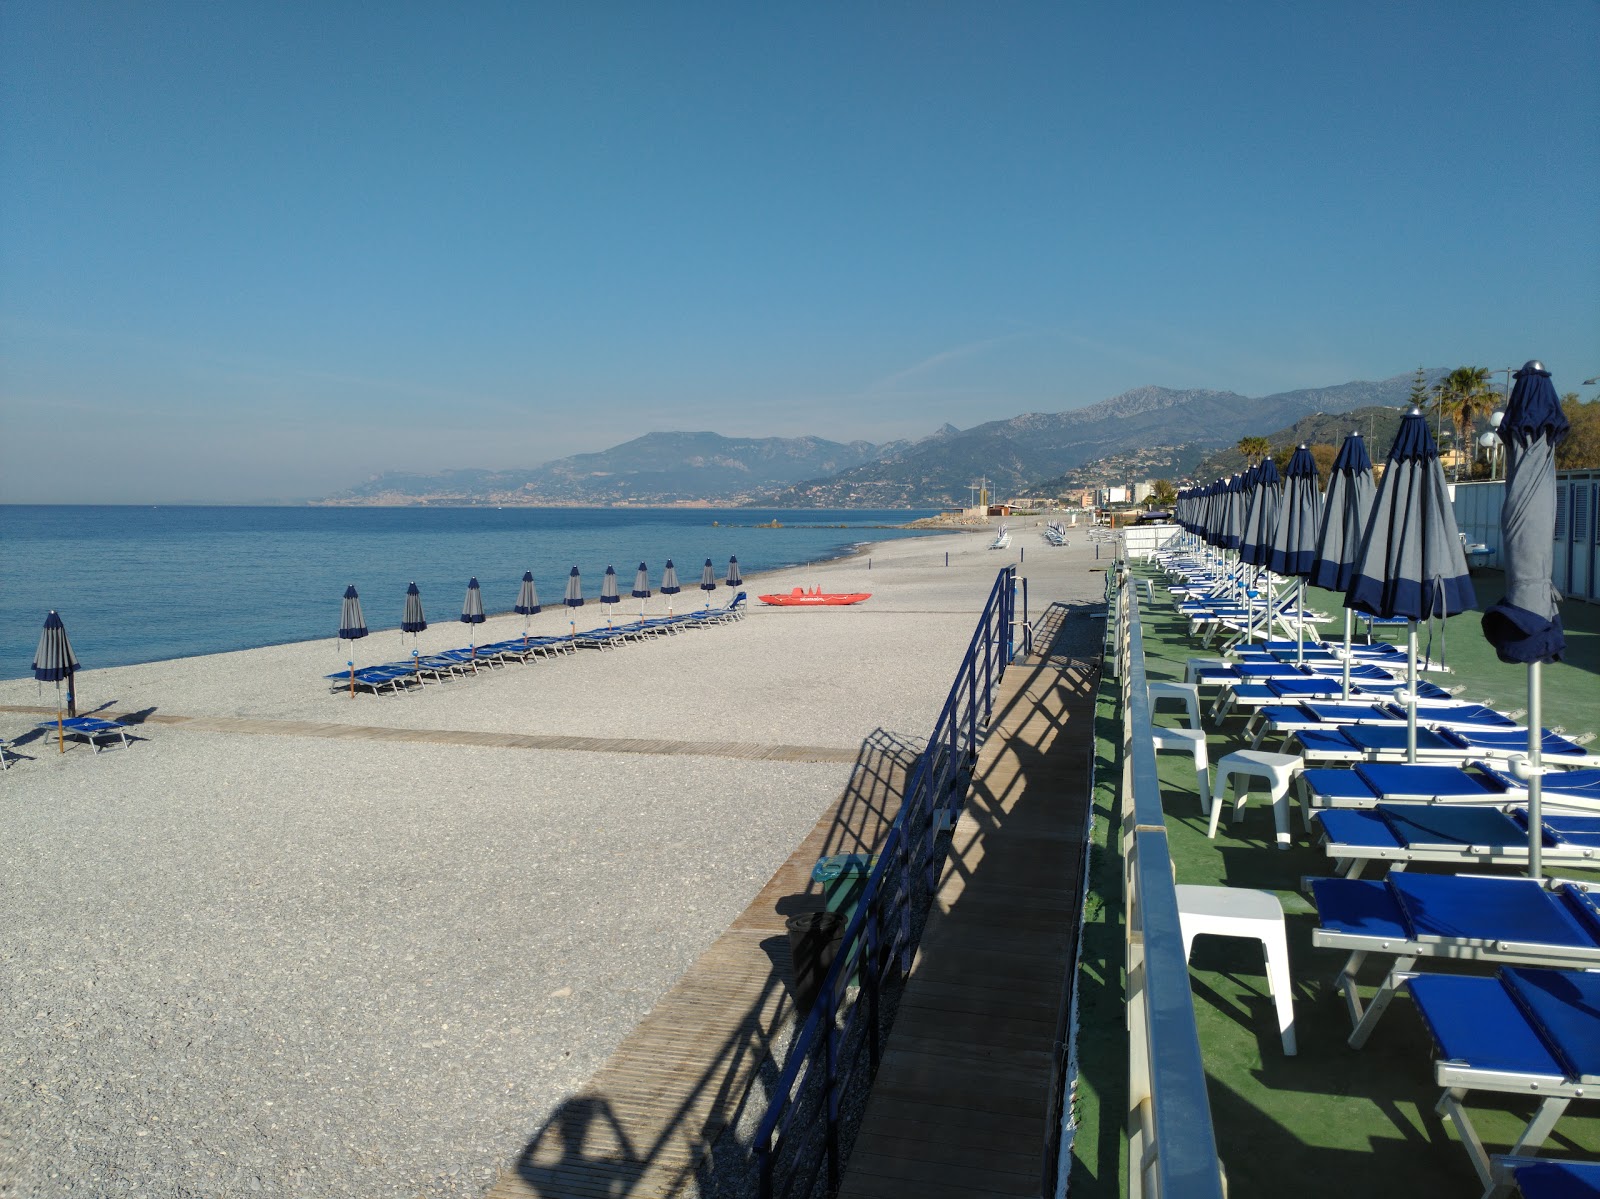 Foto af Spiaggia di Bordighera - populært sted blandt afslapningskendere